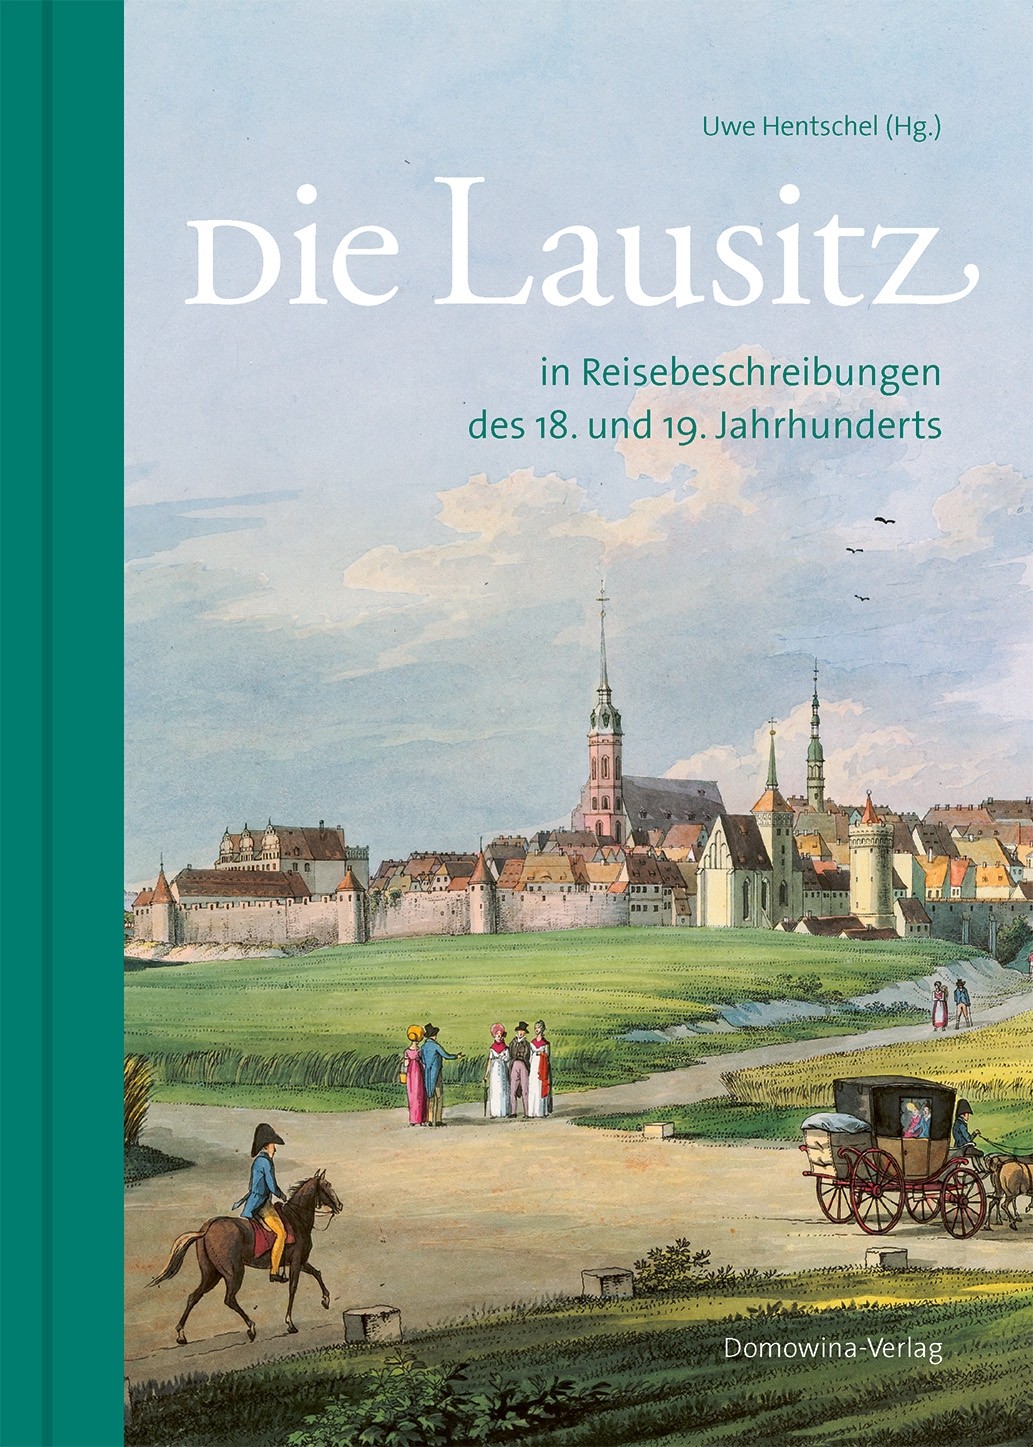 Die Lausitz in Reisebeschreibungen des 18. und 19. Jahrhunderts